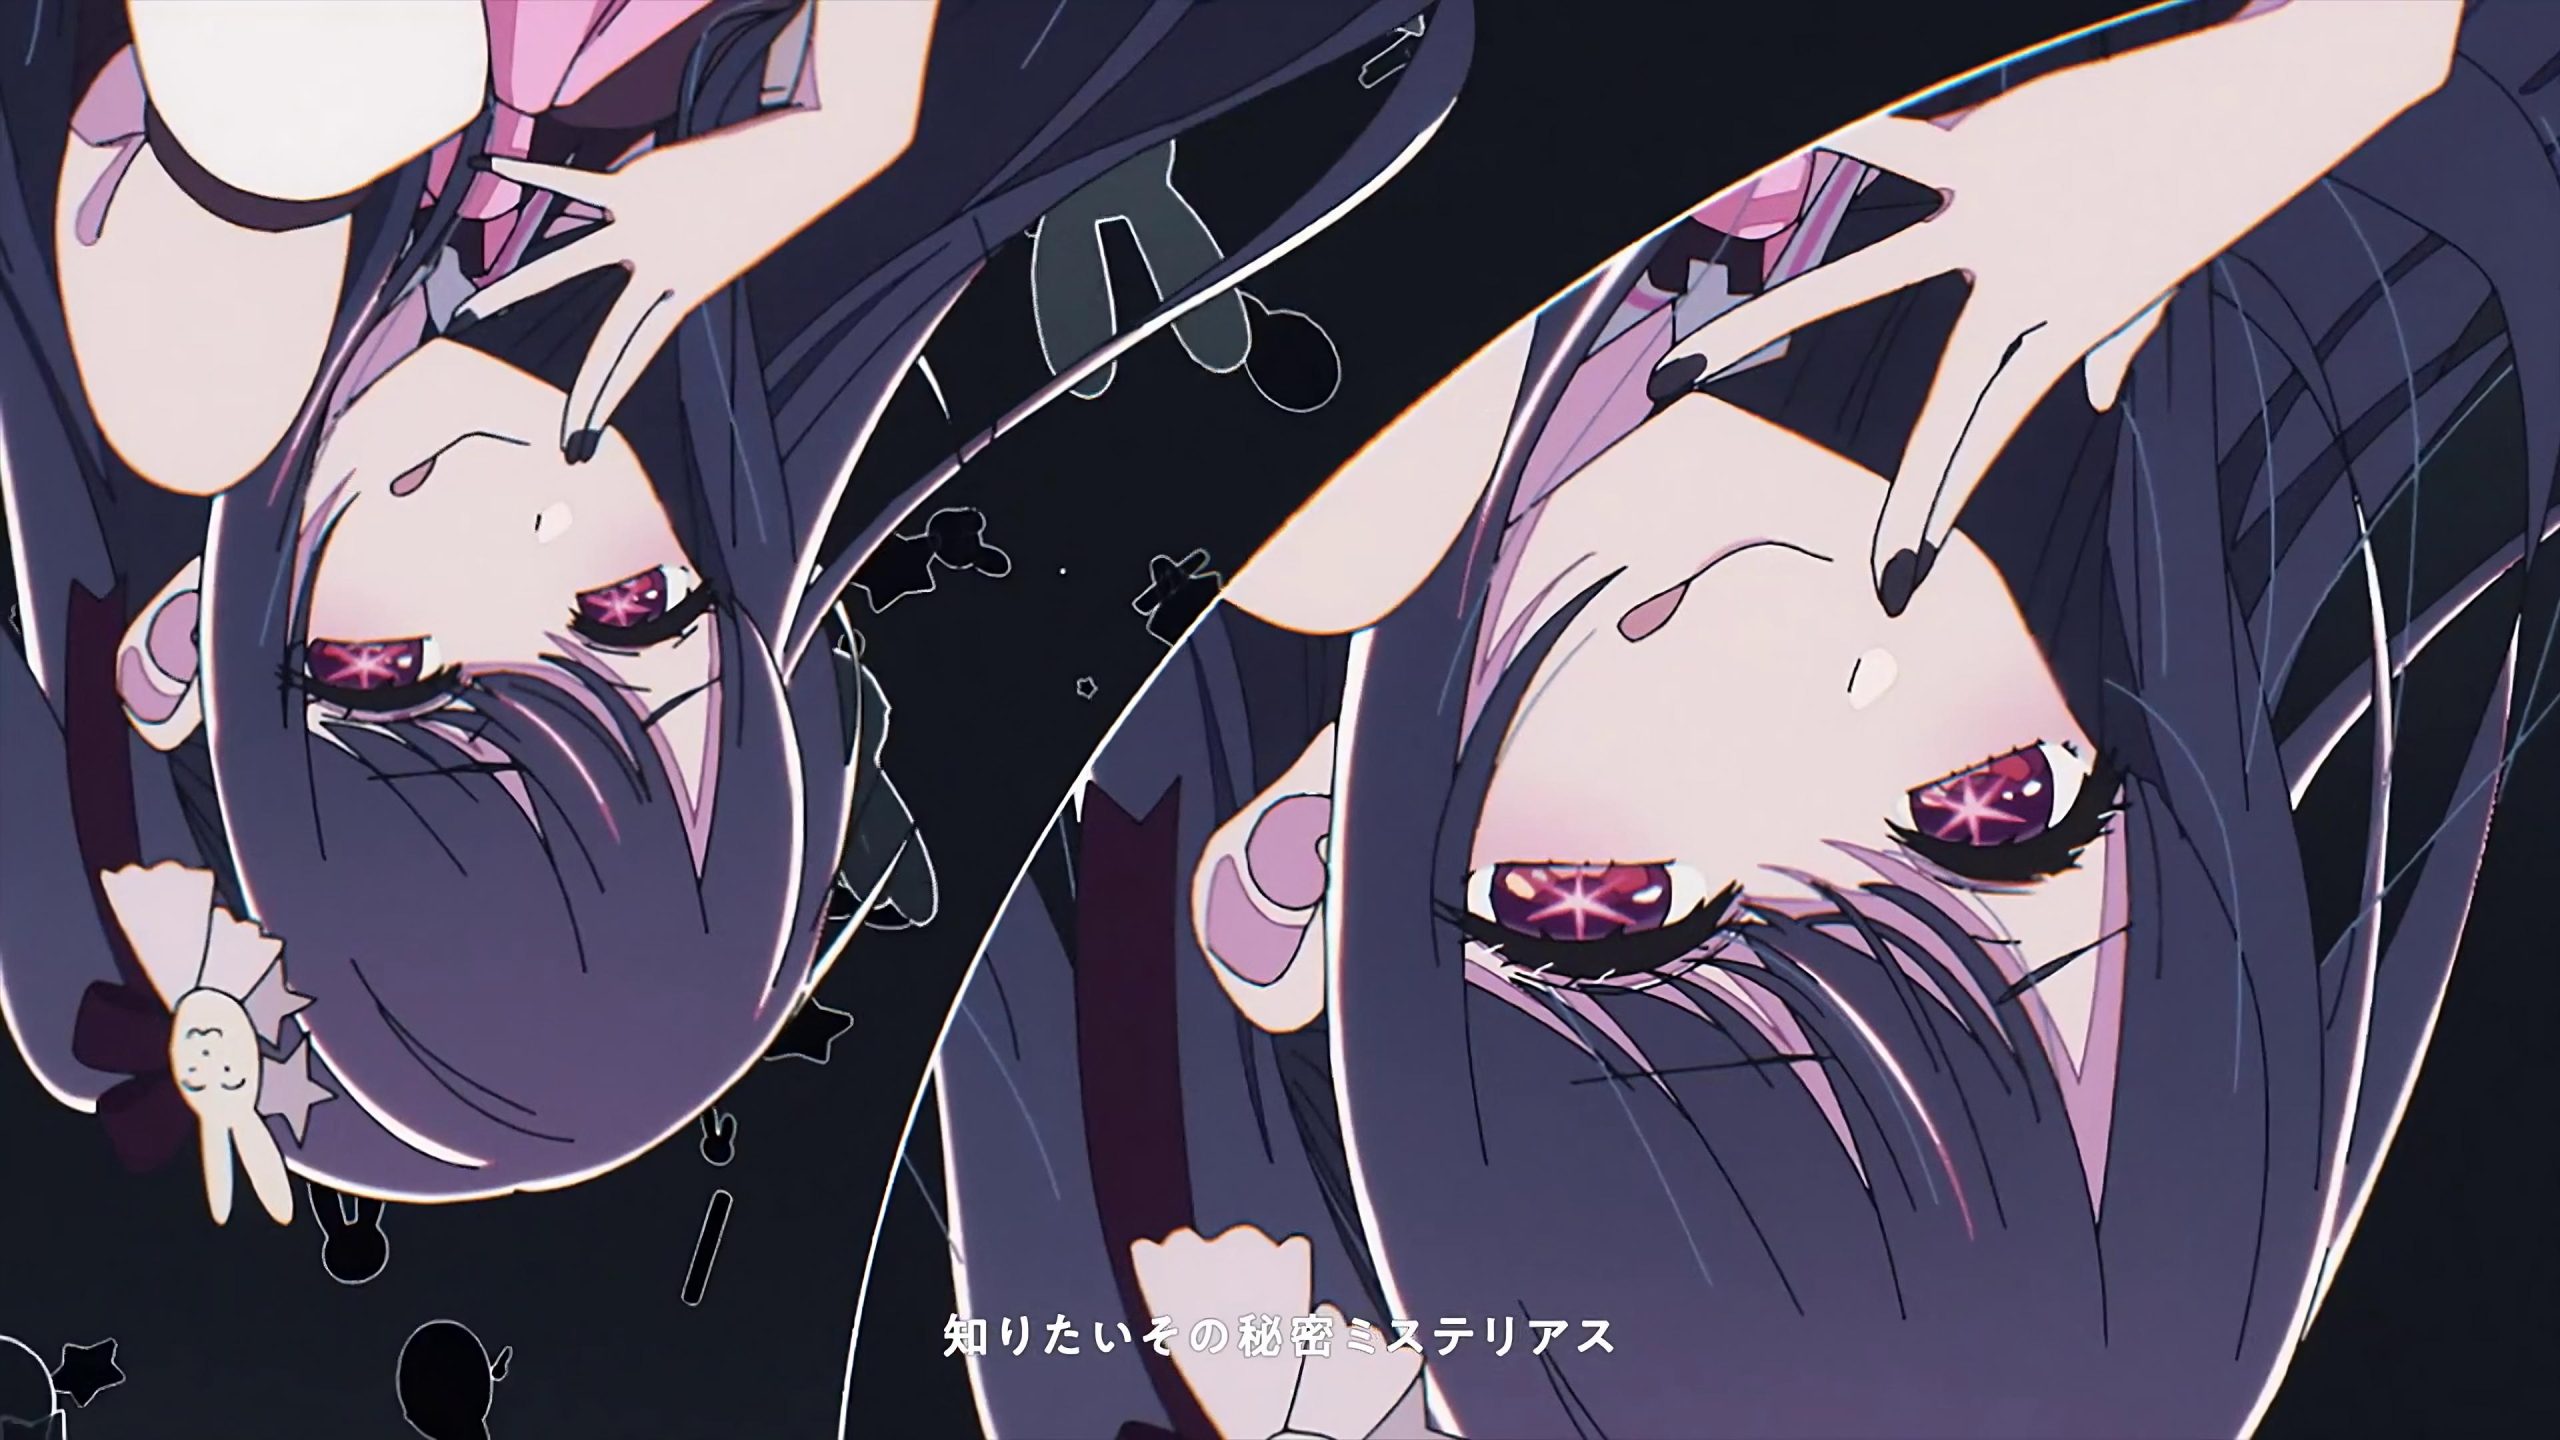 Oshi No Ko 4k Wallpaper, Oshi No Ko 4k, Anime